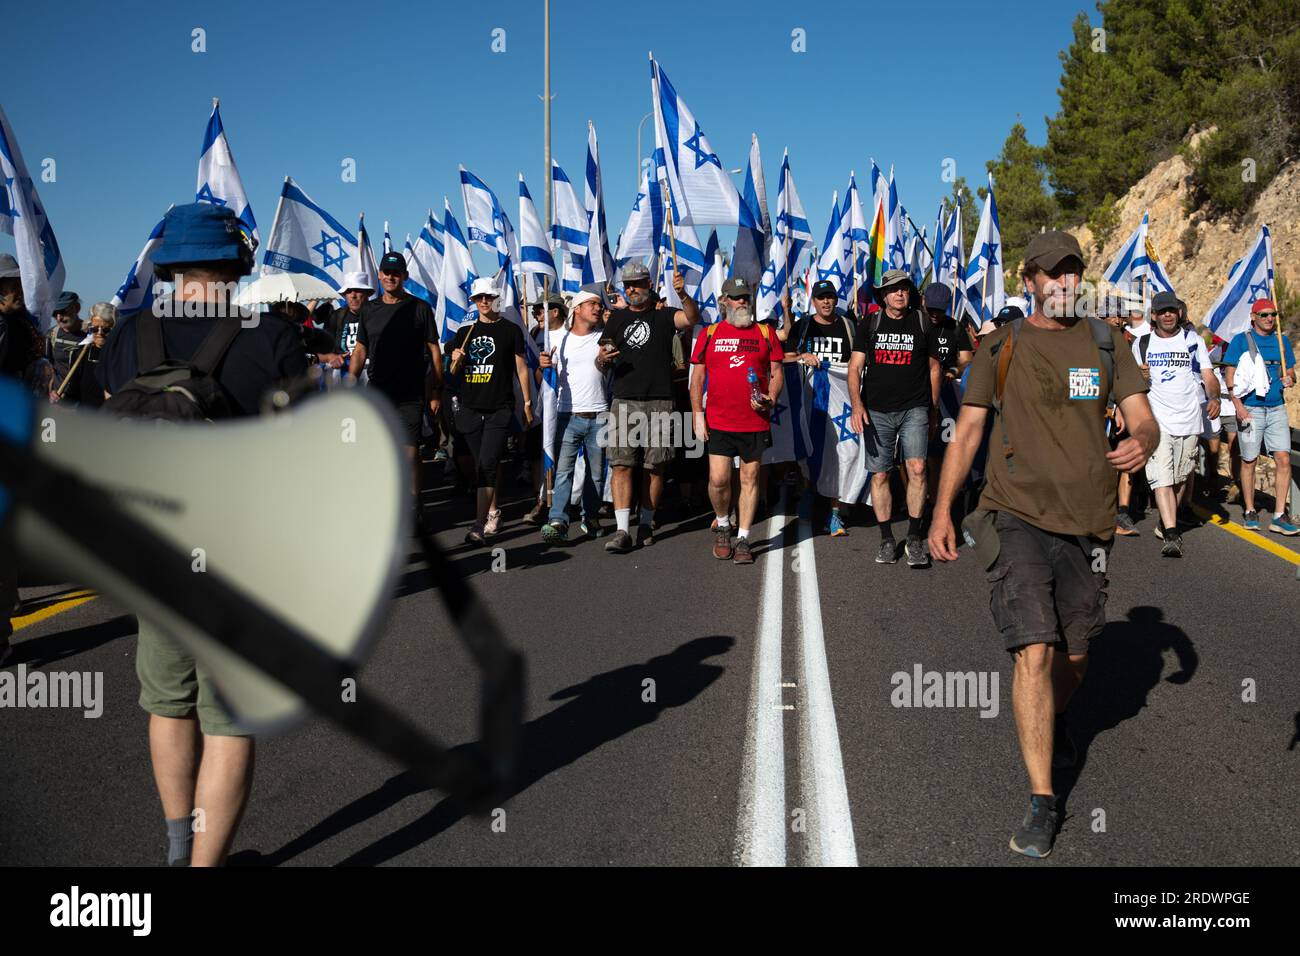 Moshe 'Bogie' Ya'alon, ehemaliger Stabschef der IDF und ehemaliger israelischer Verteidigungsminister, geht neben den Führern Shikma Schwartzman-Bressler, Moshe Radman, Ami Dror und leitete Harnevo, als sie den Protest anführten. Zehntausende Demonstranten gegen die Reform schwenken die israelische Flagge, während sie die Zufahrtsstraße nach Jerusalem erklimmen, die einen 4-Tage-marsch beendet, der in Tel Aviv begann, um gegen die derzeit laufenden Gesetzesüberarbeitungen zu demonstrieren. Stockfoto